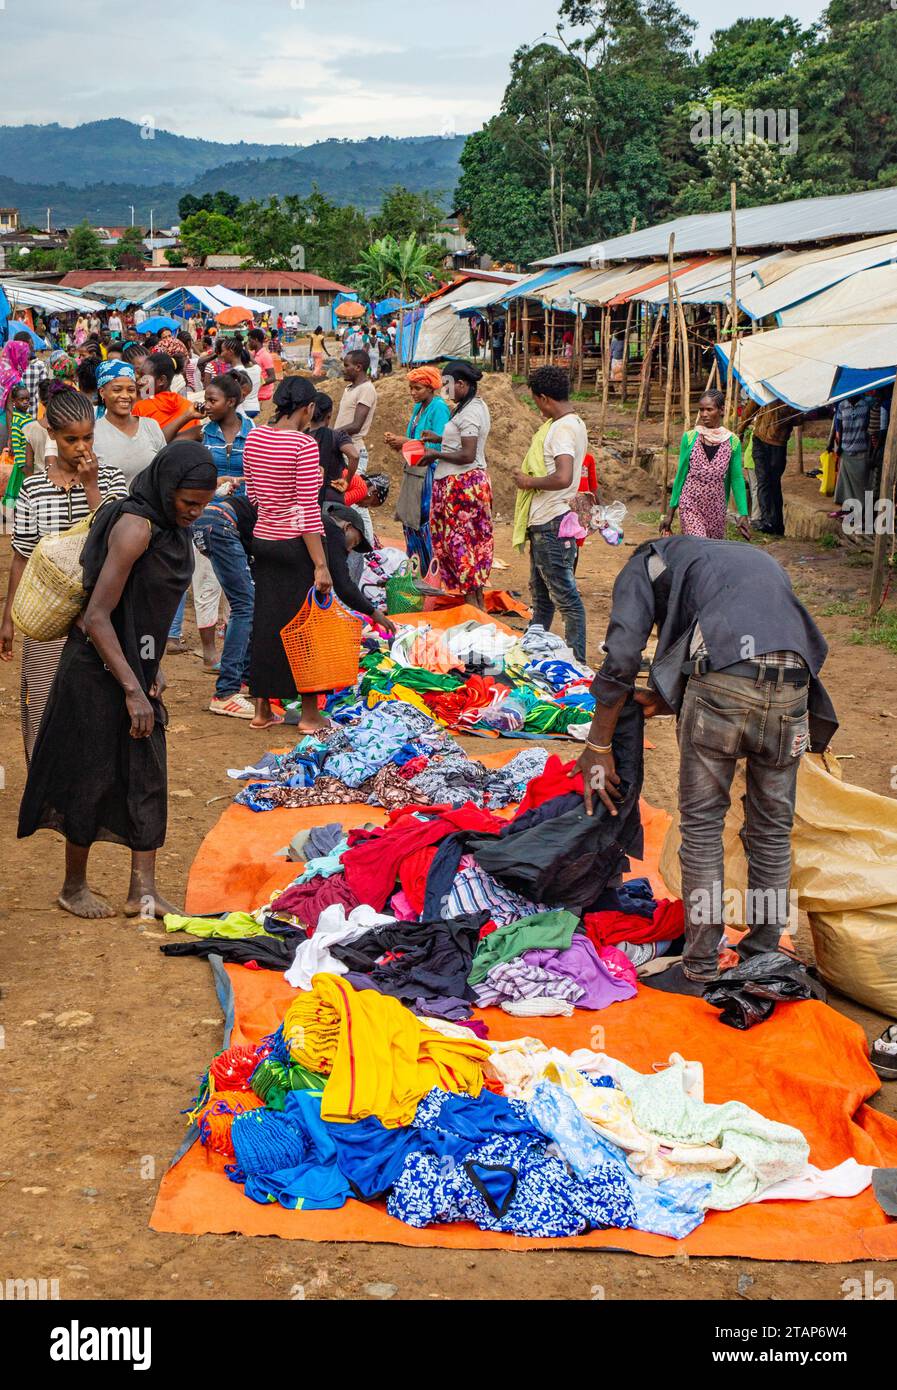 A roadside market in Mizan Teferi, Ethiopia Stock Photo